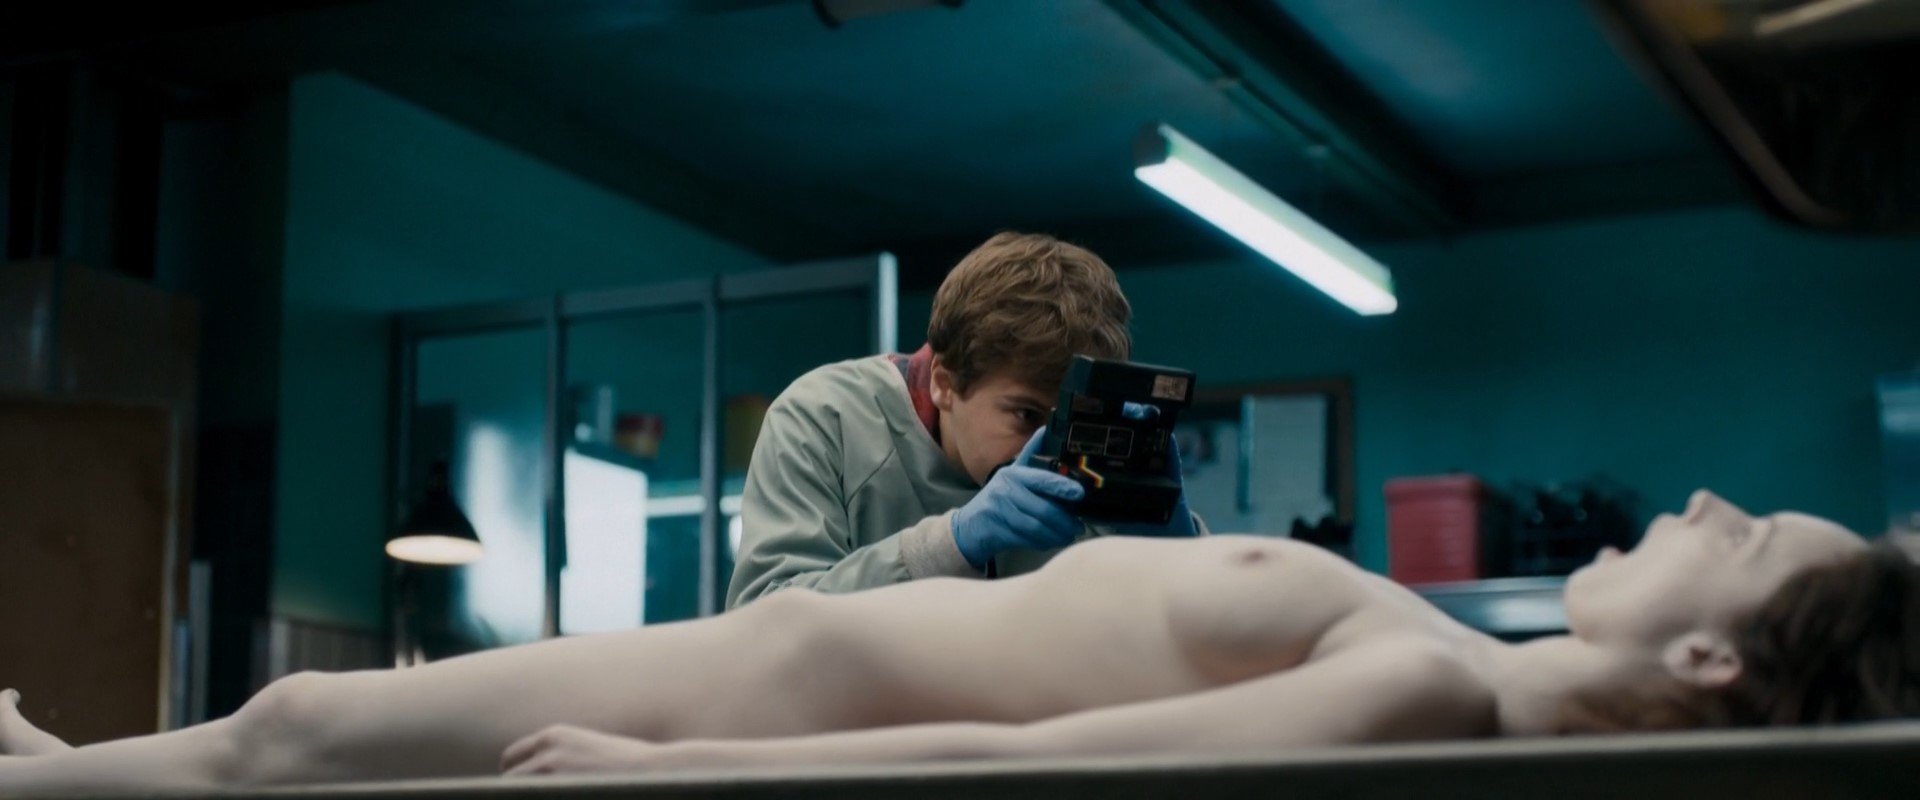 Olwen Kelly Nude - The Autopsy of Jane Doe (2016) HD 1080p.